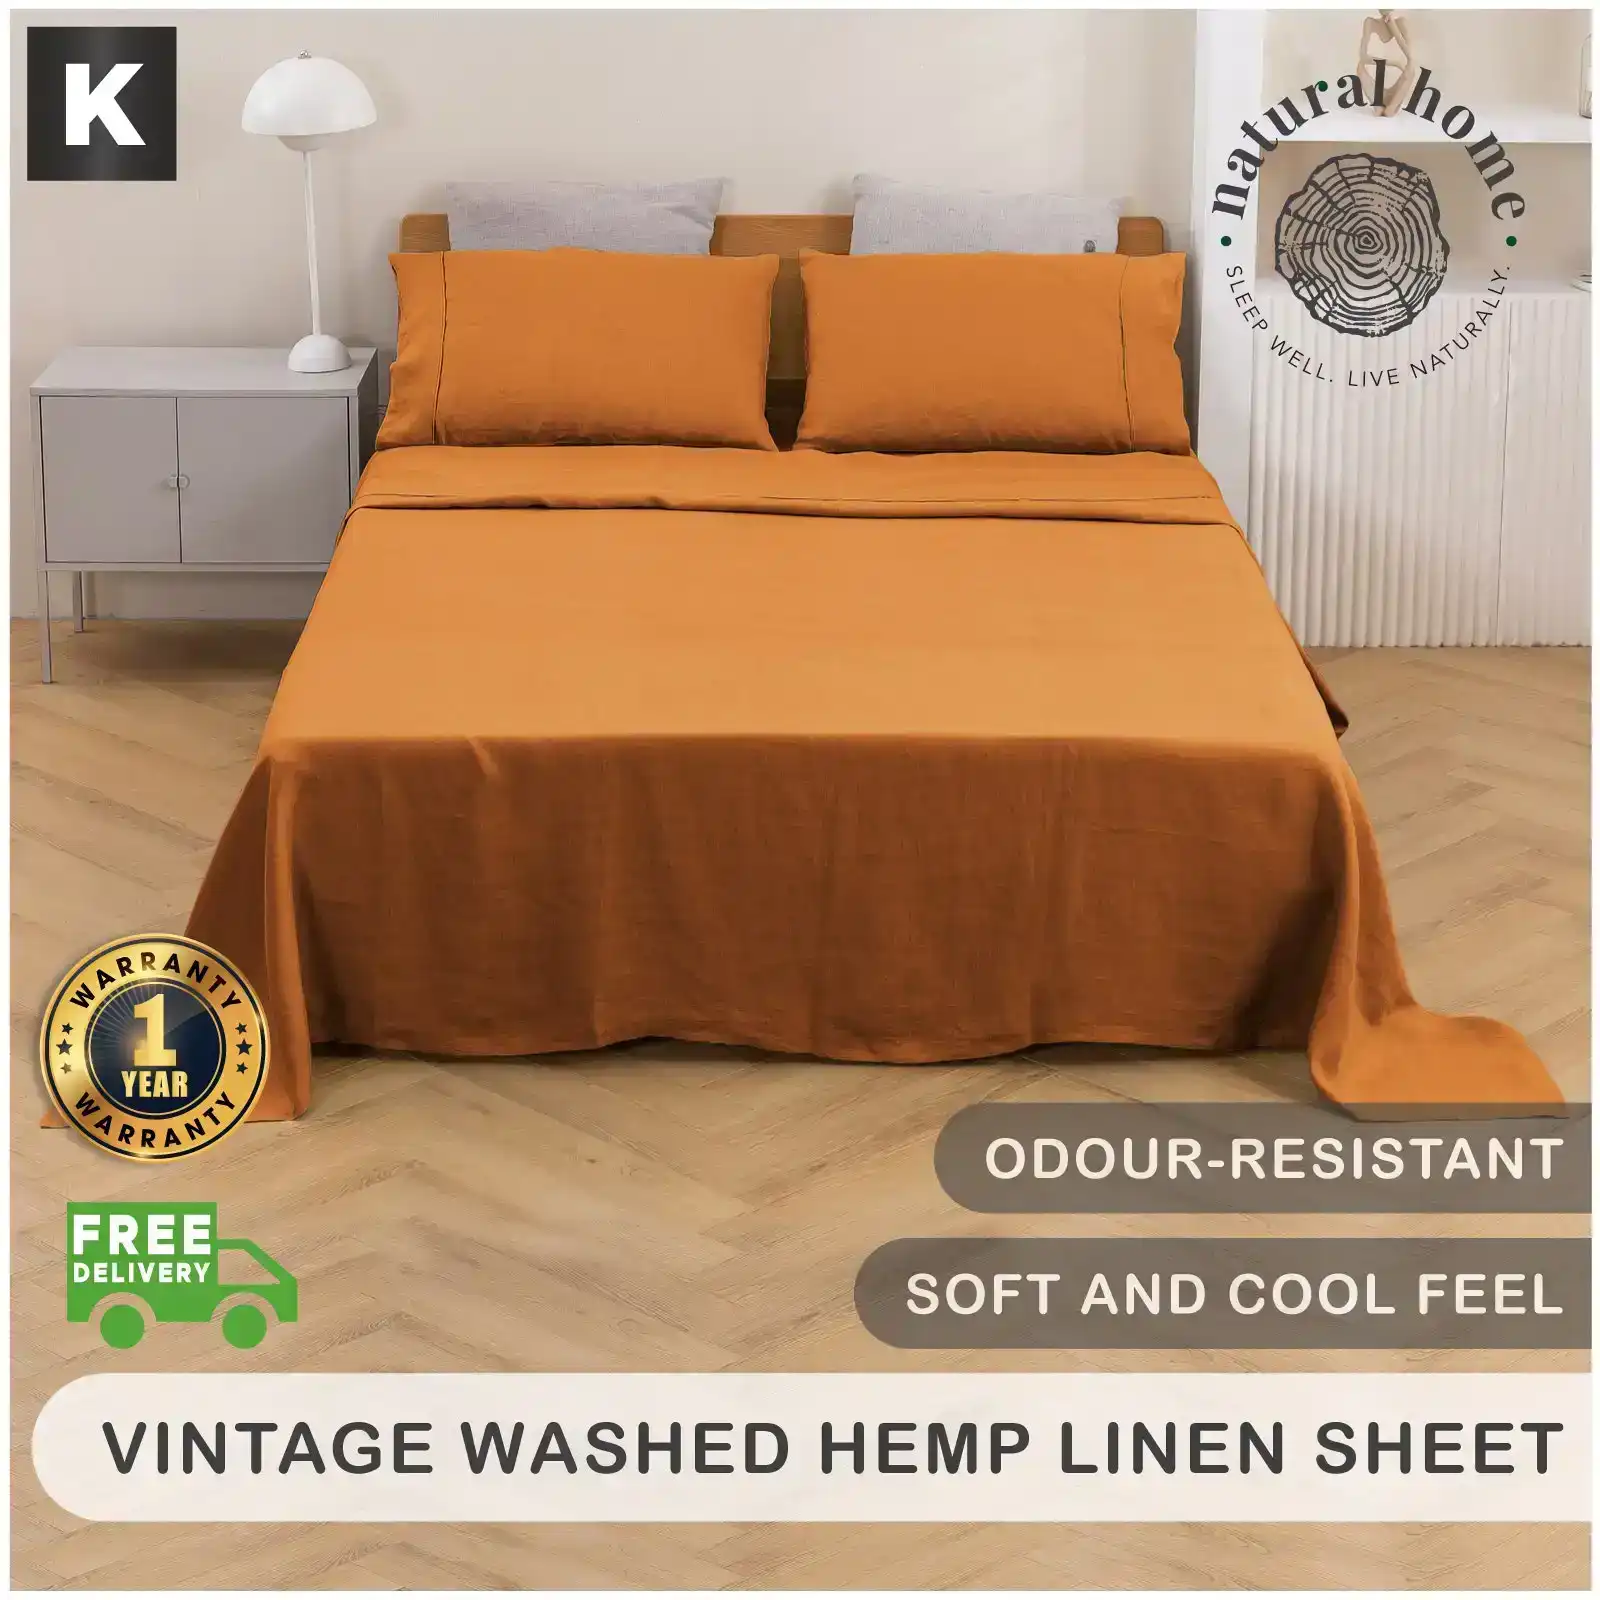 Natural Home Vintage Washed Hemp Linen Sheet Set Rust King Bed